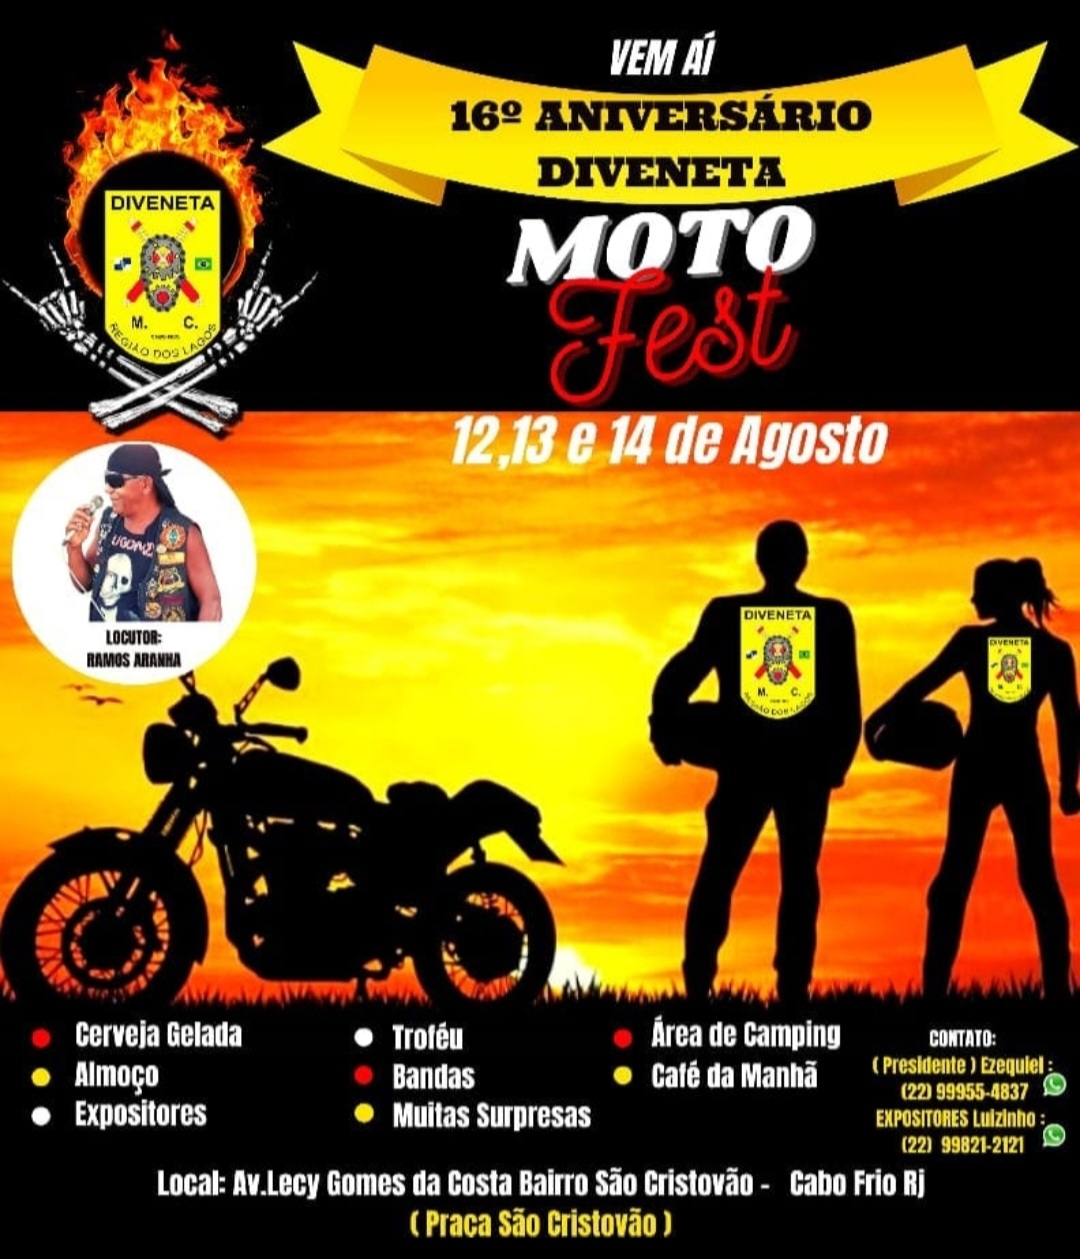 Motonline e Jacaré motos divulgam extenso calendário de eventos - Motonline